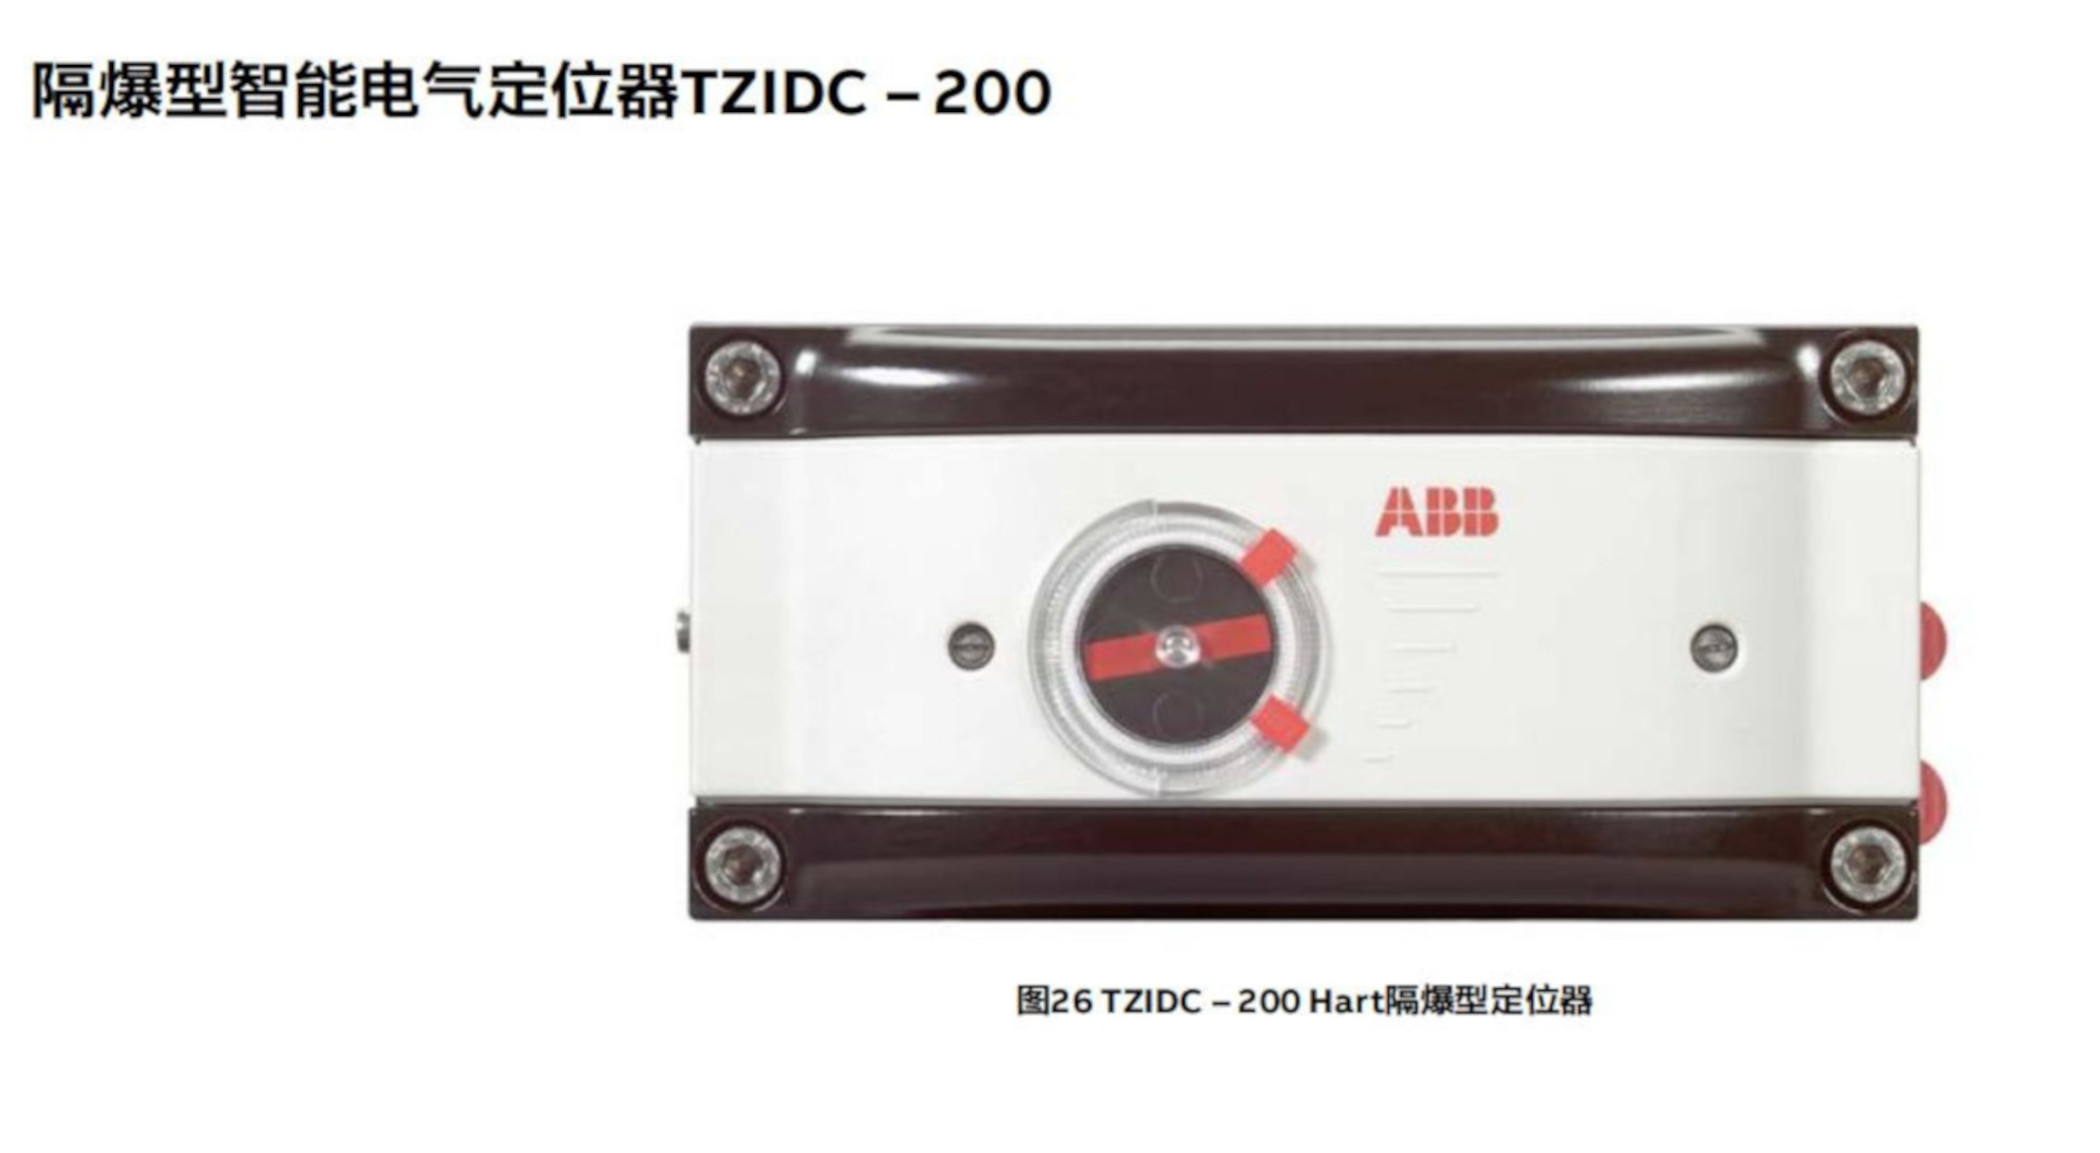 TZIDC-200 系列